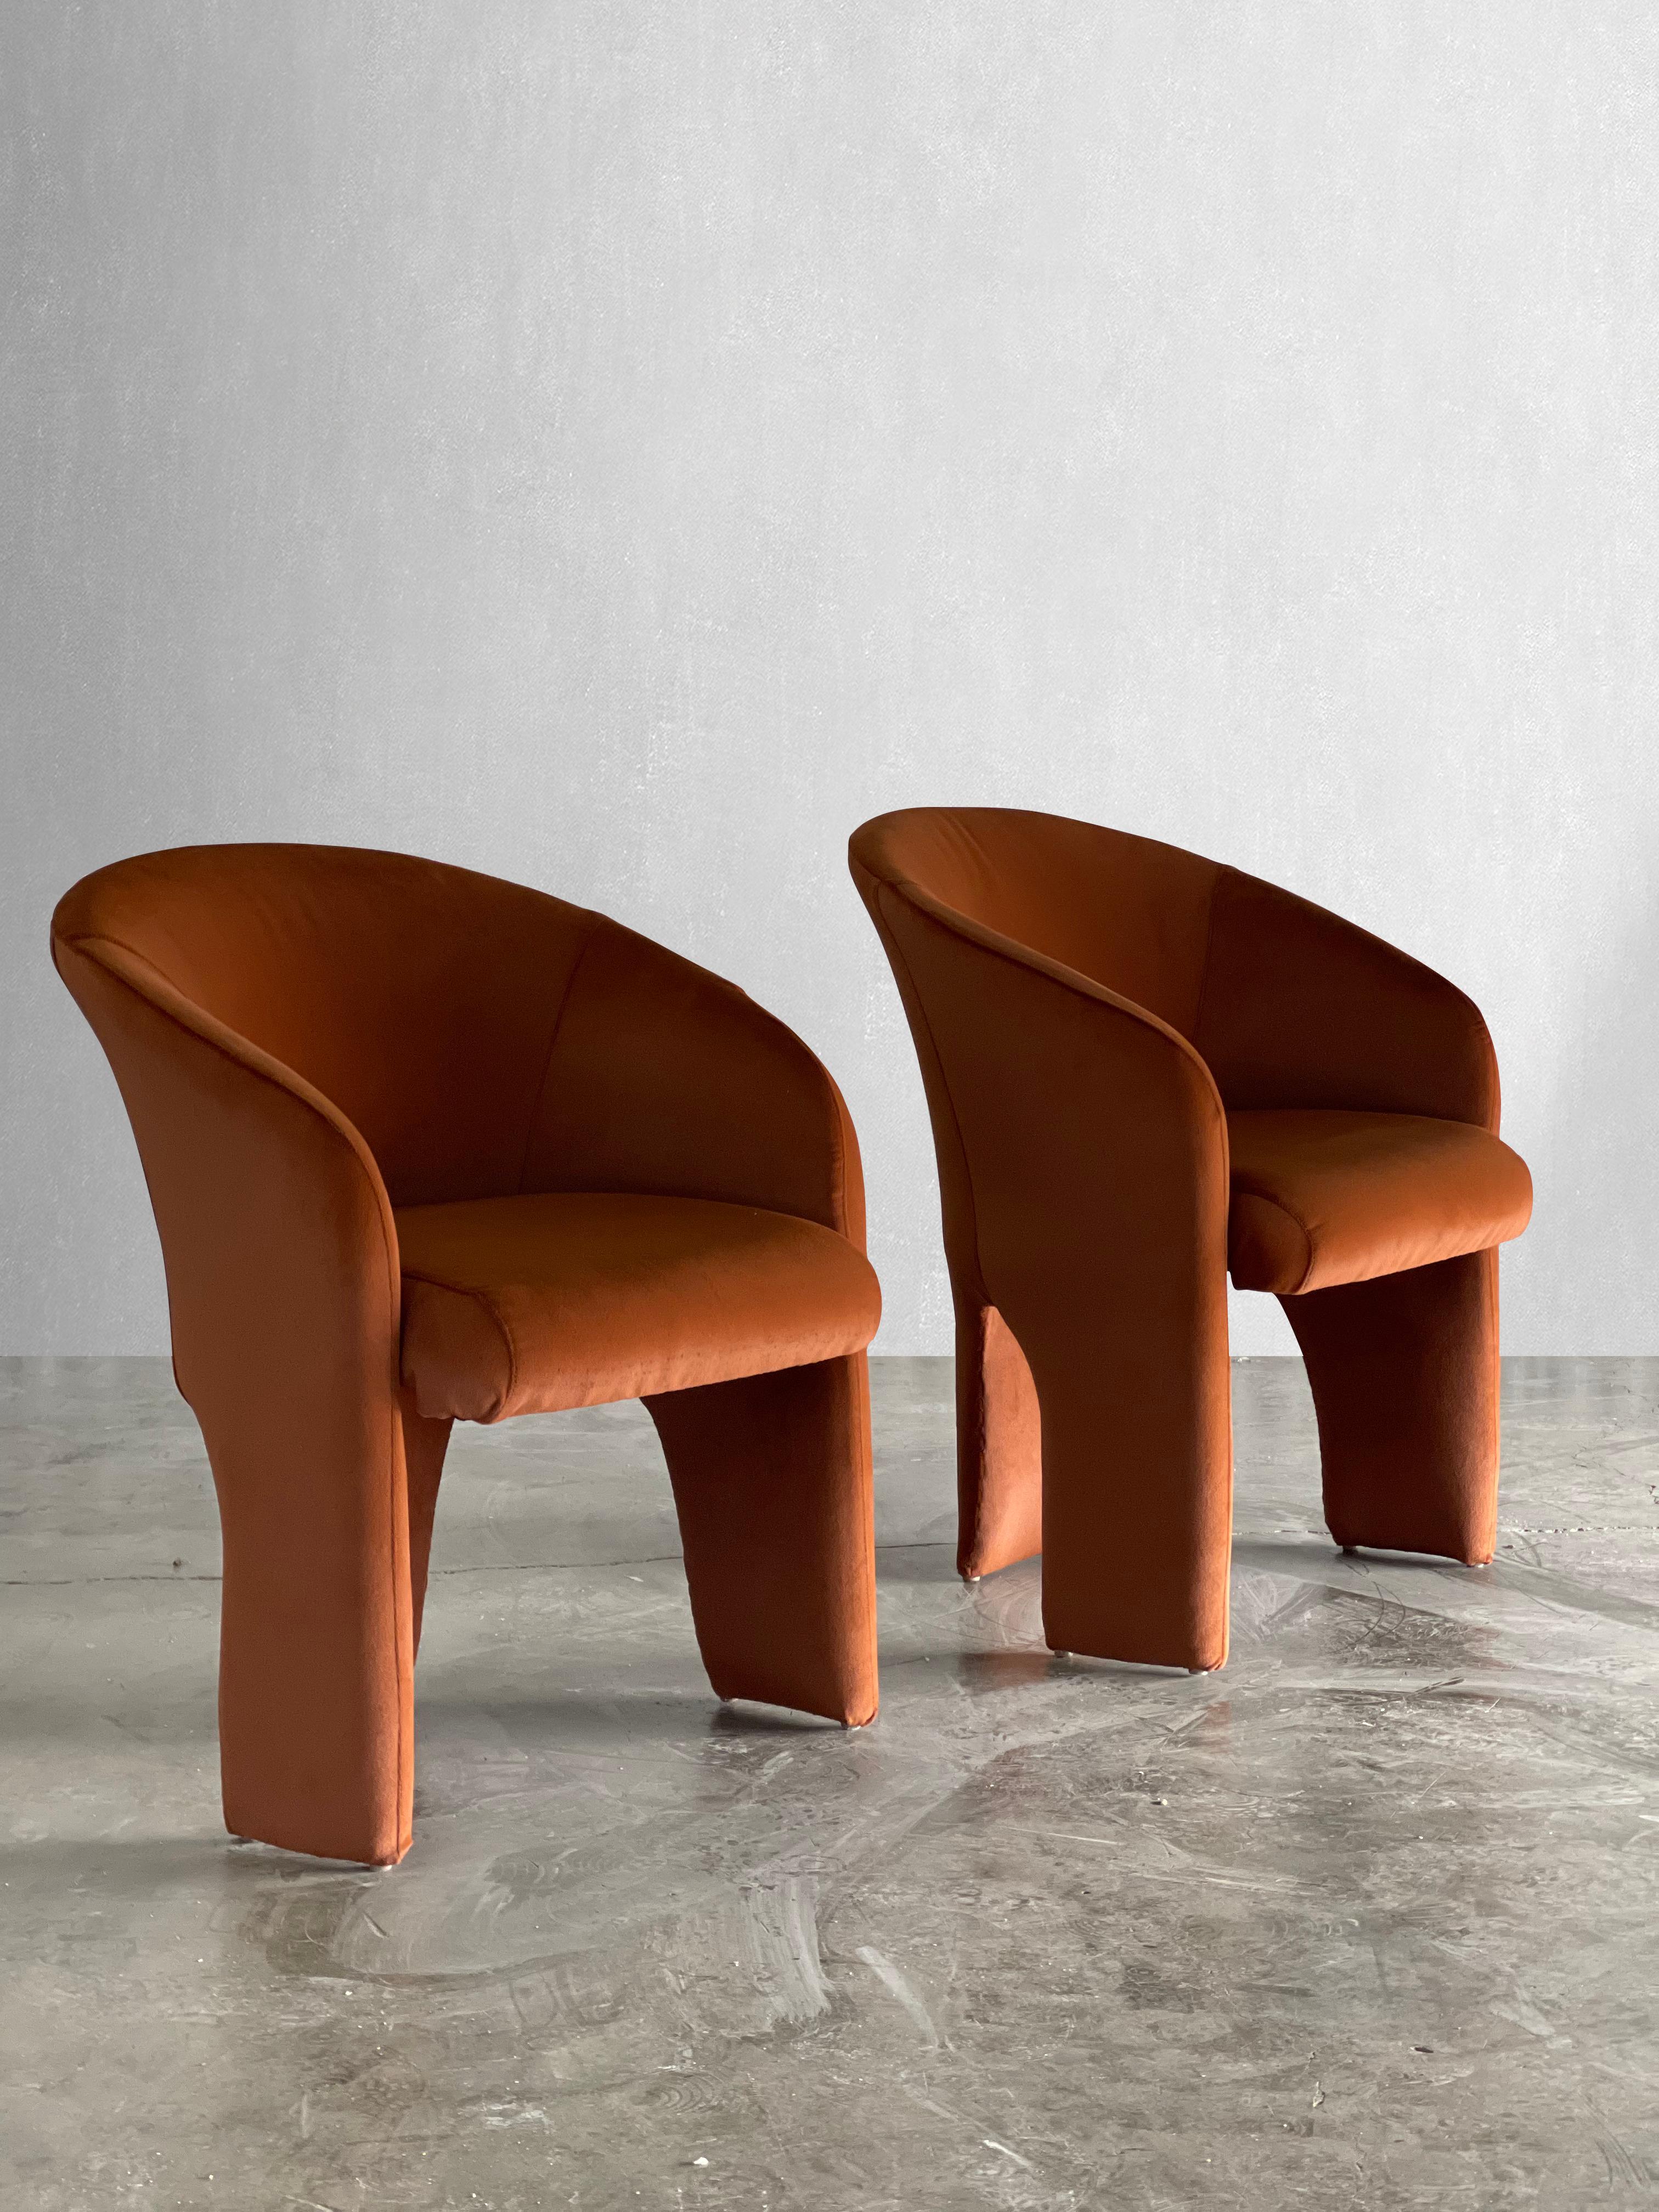 C. 1980

D'étonnantes chaises sculpturales à trois pieds. Ces chaises ont été recouvertes d'un velours couleur rouille. Ils sont assis de manière extrêmement confortable. Le tissu est magnifique au toucher.

Dimensions :

25W x 32H x 27D

Hauteur du